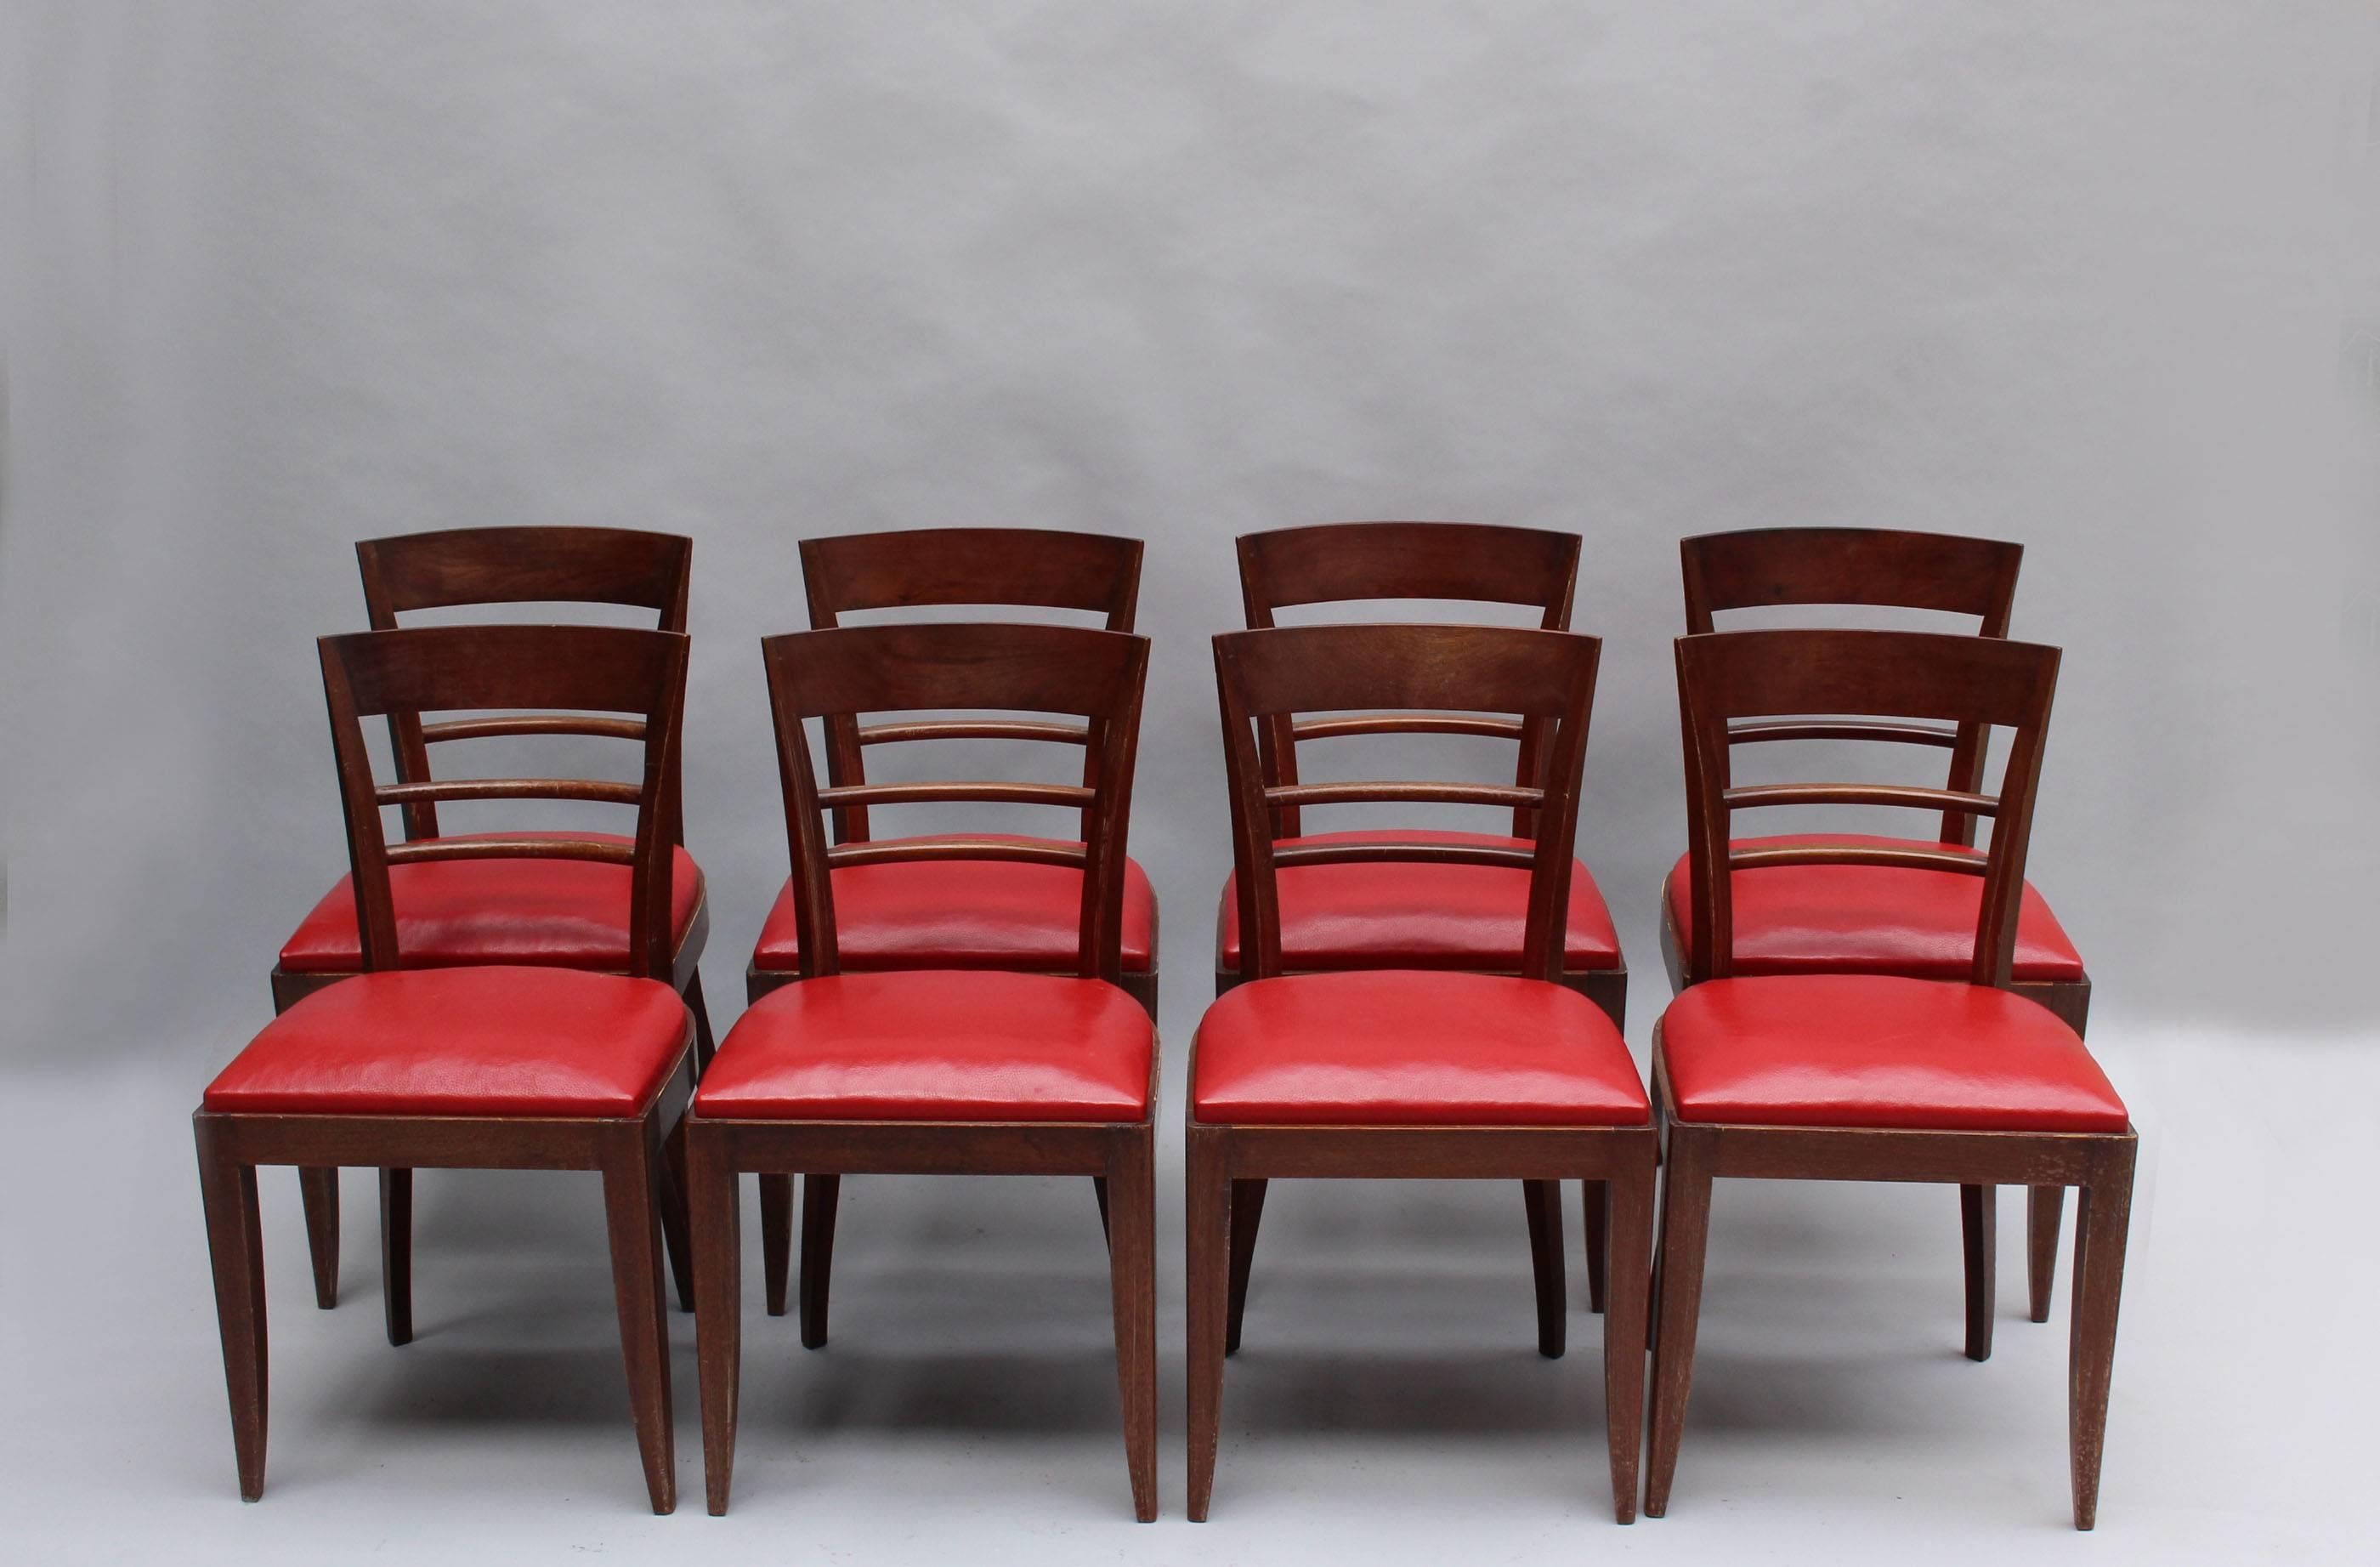 Ein Satz von zehn feinen französischen Art Deco Stühlen aus Mahagoni (8 Seitenstühle + 2 Armstühle)
Abmessungen:
Seite H 32